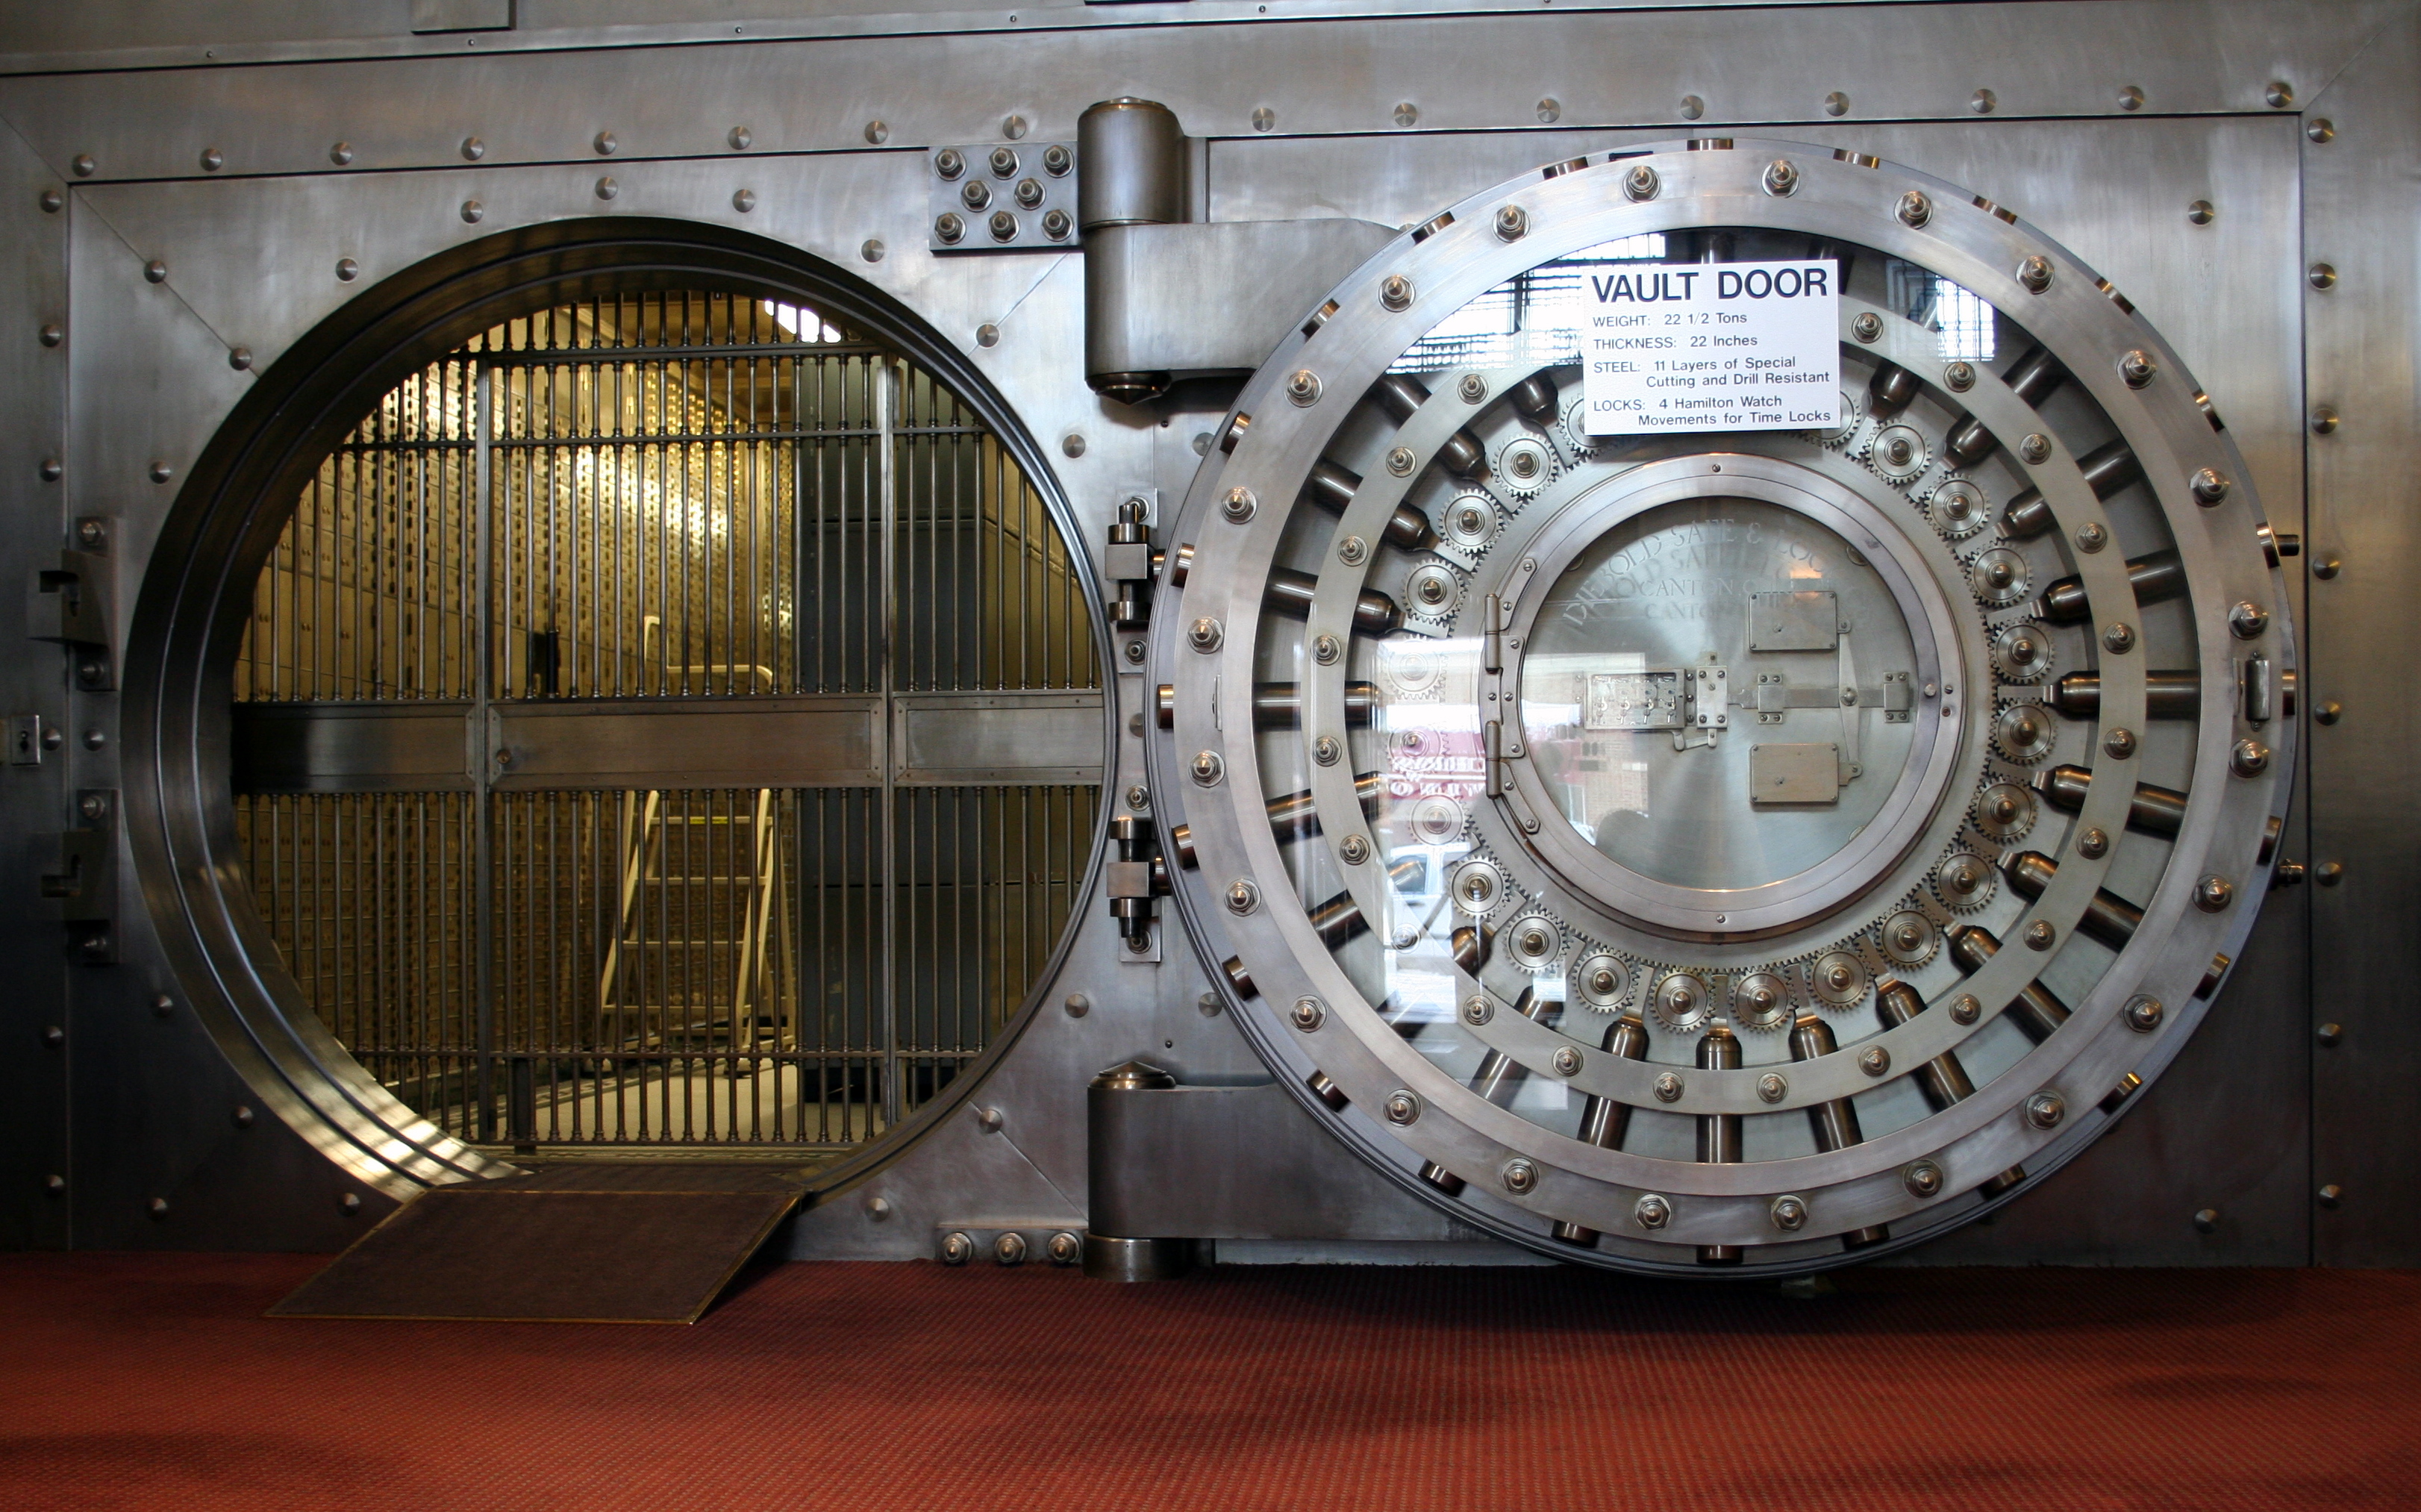 A secure home safe or vault.